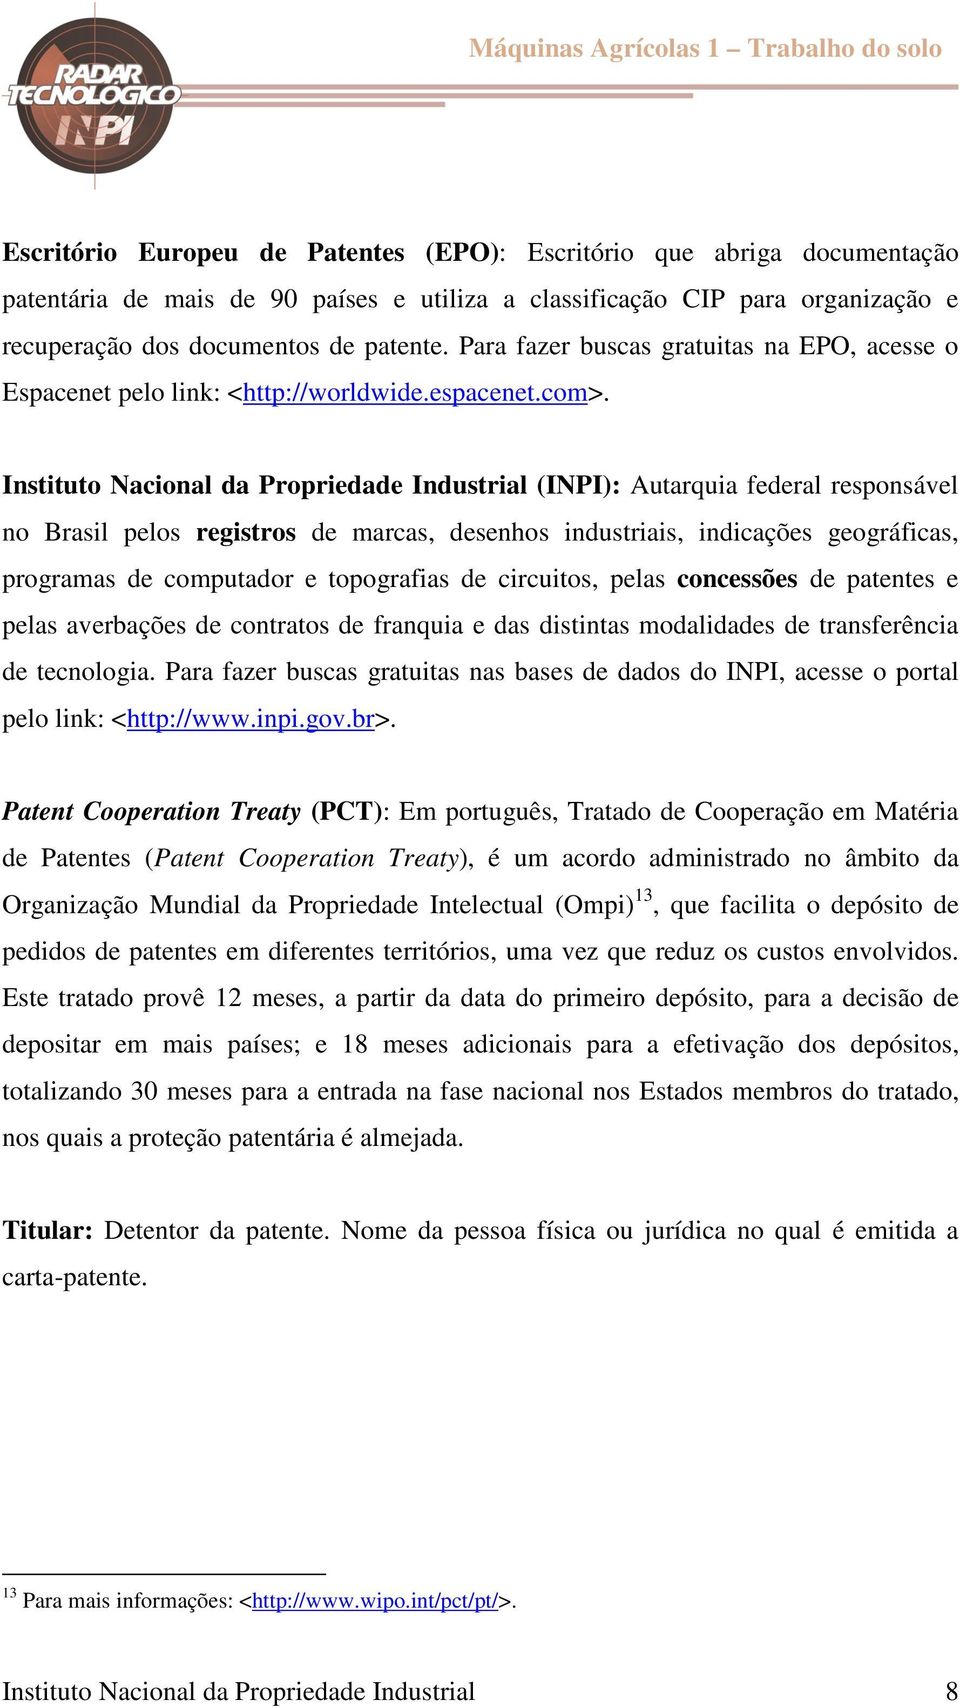 Instituto Nacional da Propriedade Industrial (INPI): Autarquia federal responsável no Brasil pelos registros de marcas, desenhos industriais, indicações geográficas, programas de computador e